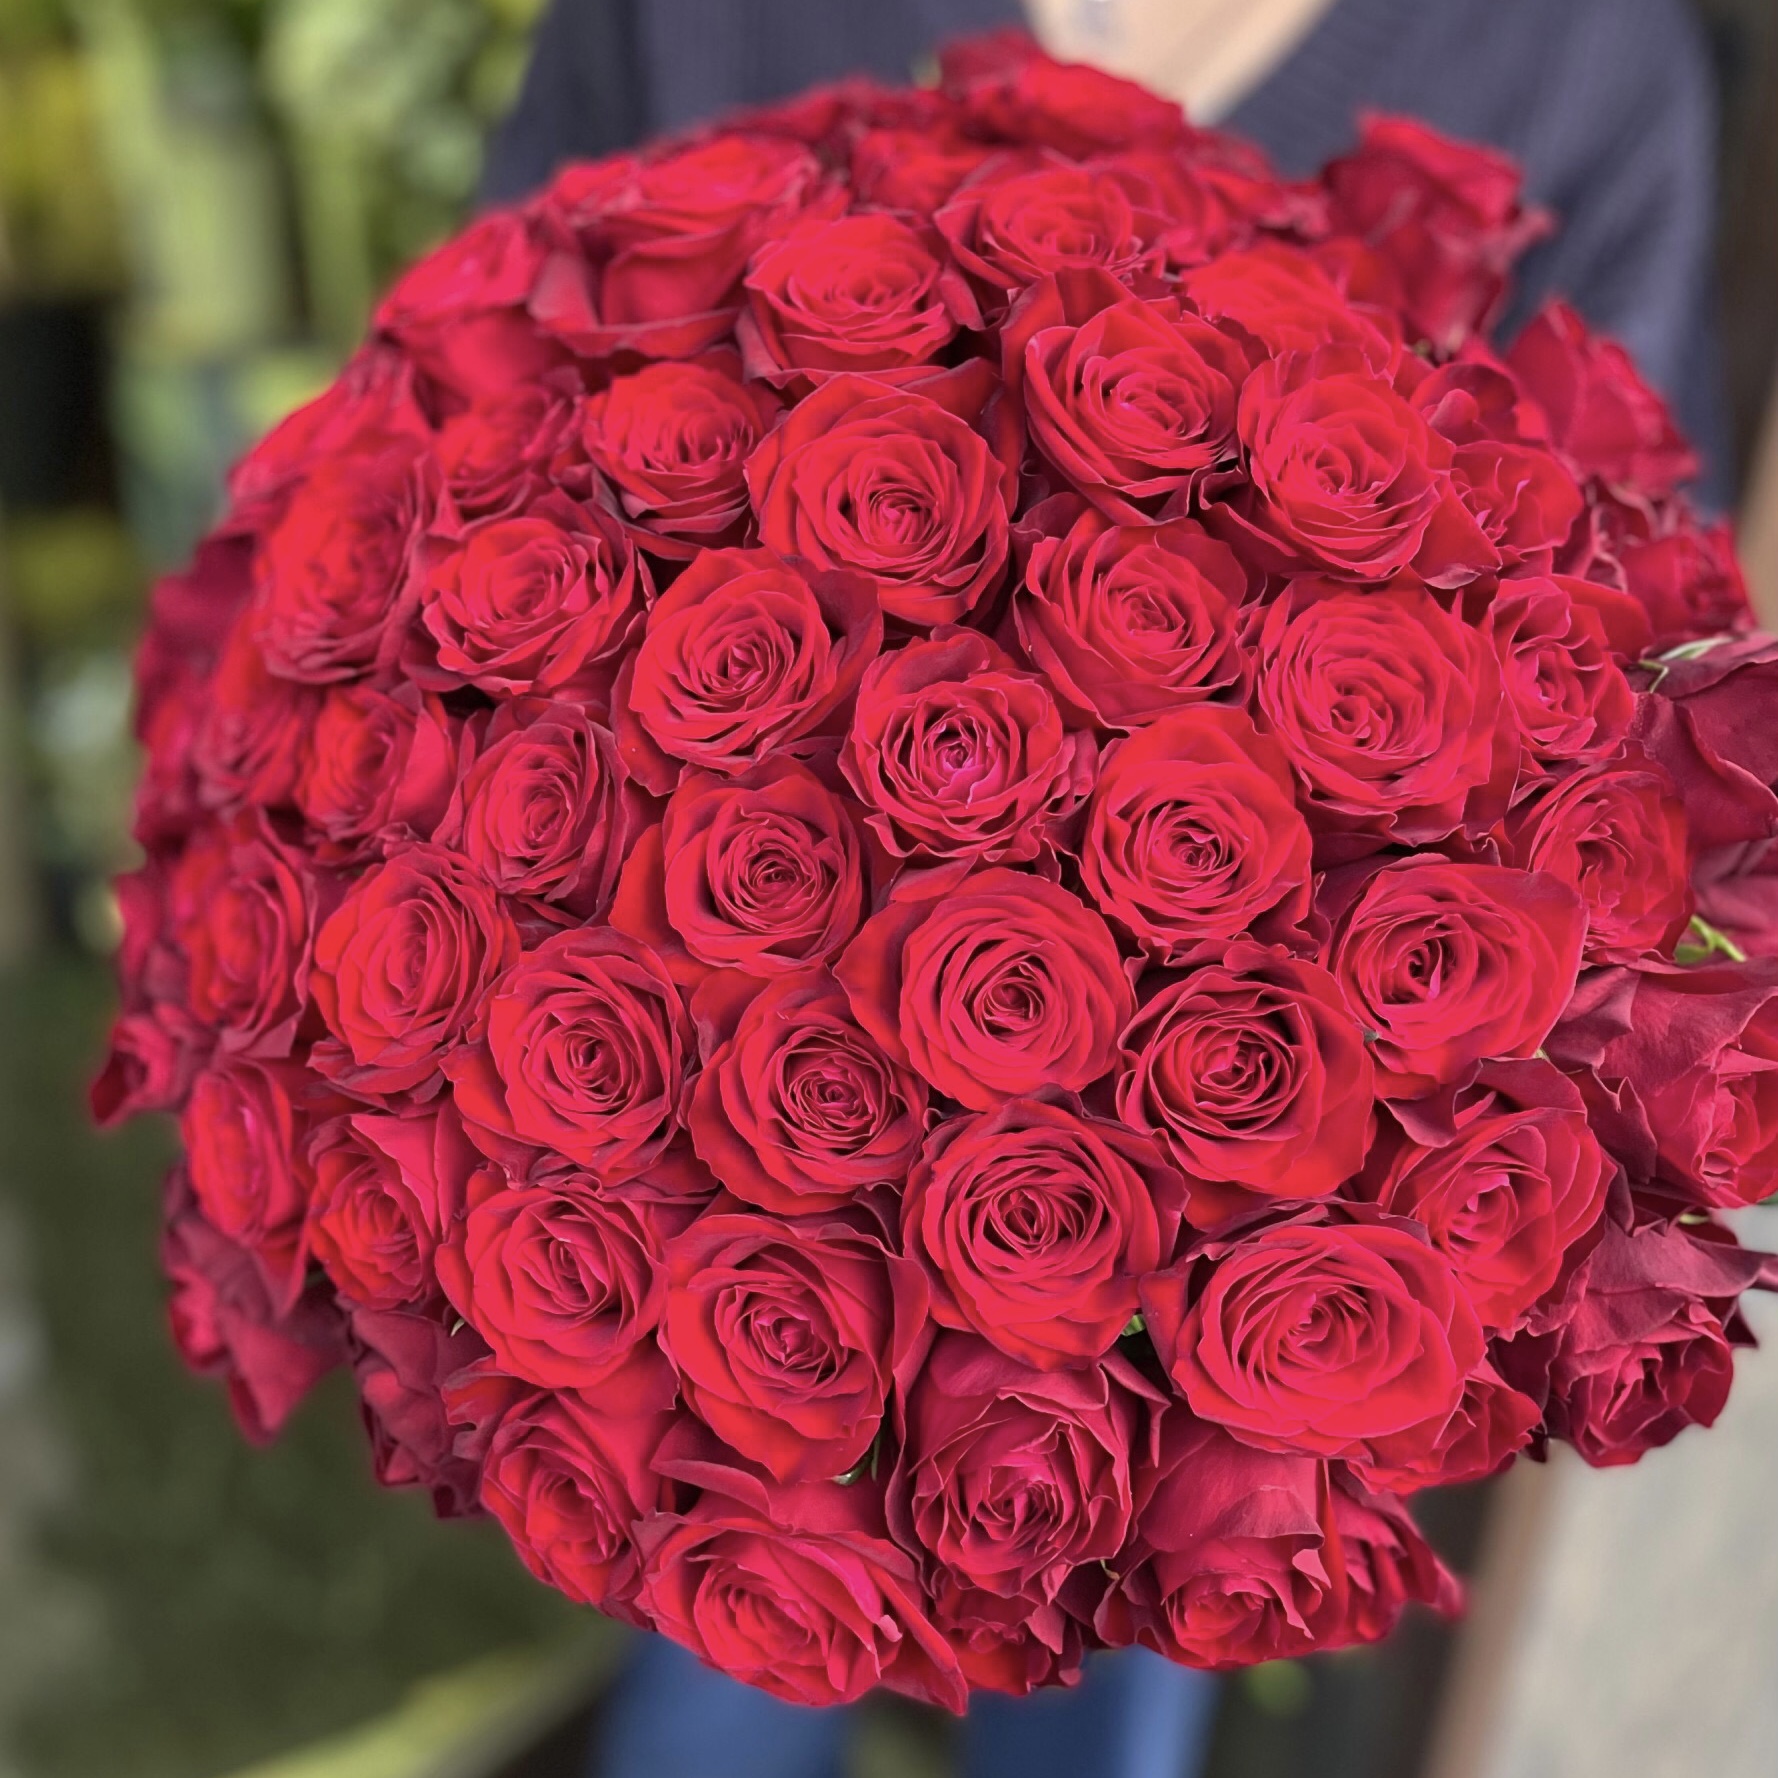 【プロポーズ】想いを伝える99本の赤いバラ